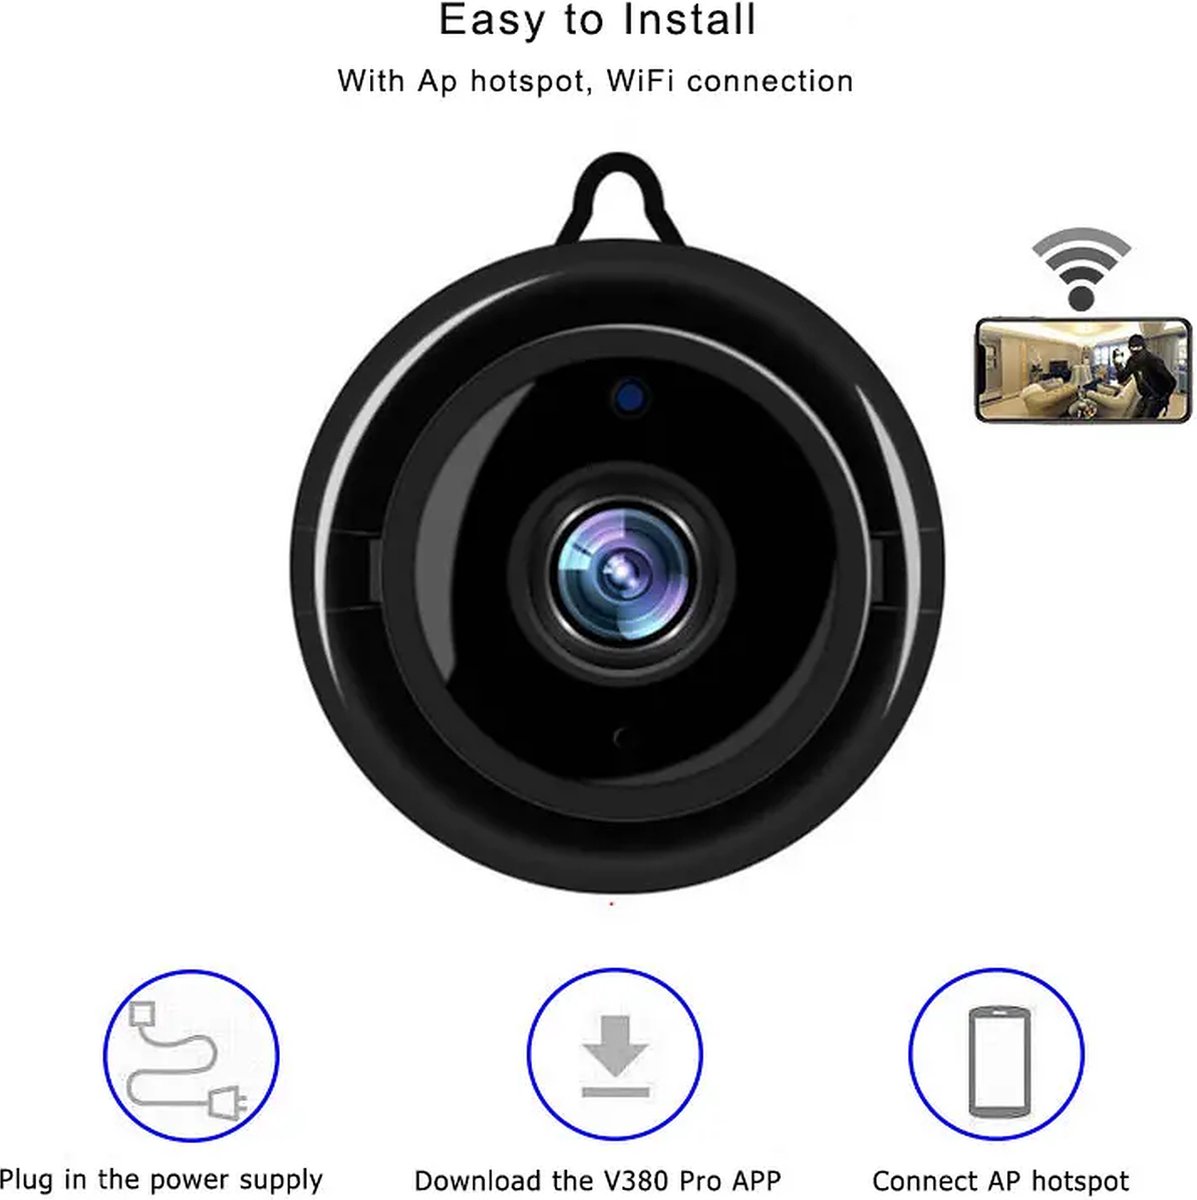 Wifi Camera - 1080P Full HD- Beveiligingscamera - IP Camera - Camerabewaking - Spy Camera - 2-Weg Audio - Beweeg en Geluidsdetectie - Nachtvisie - Huisdiercamera - Opslag in Cloud & App -SD Kaart